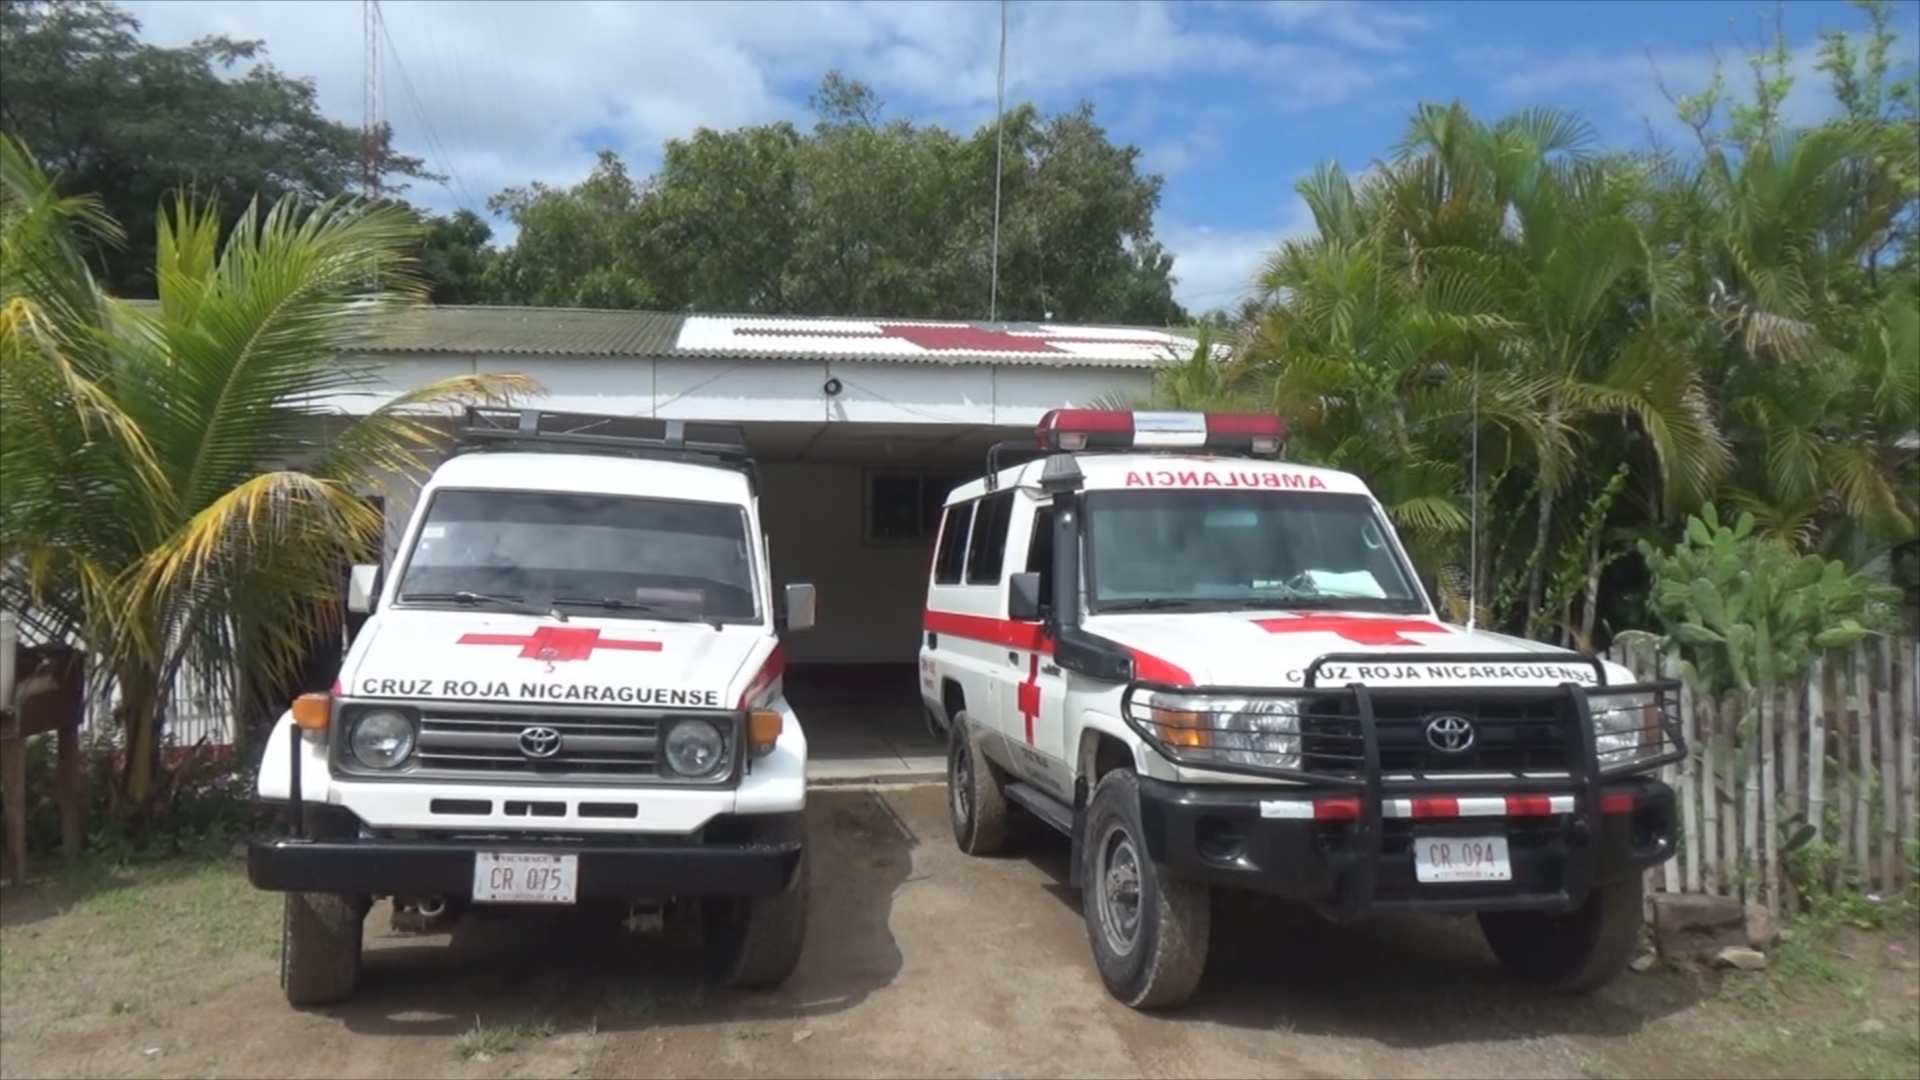 La Cruz Roja filial Somoto recibió una importante donación en efectivo para la rehabilitación del techo de su sede